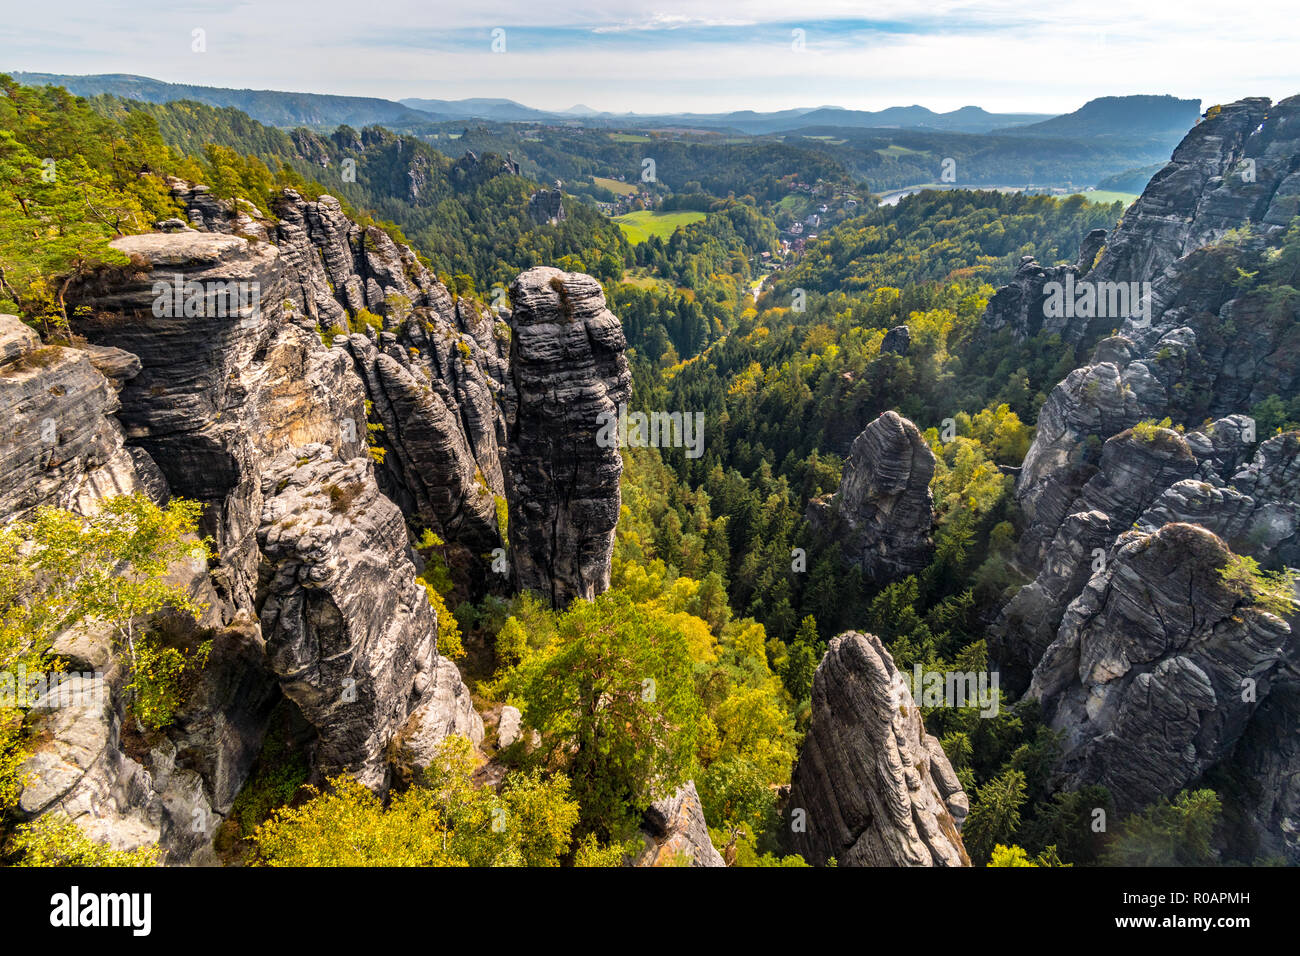 Les tours de grès en Bohème et la Suisse Saxonne Parc National en automne, Allemagne Banque D'Images